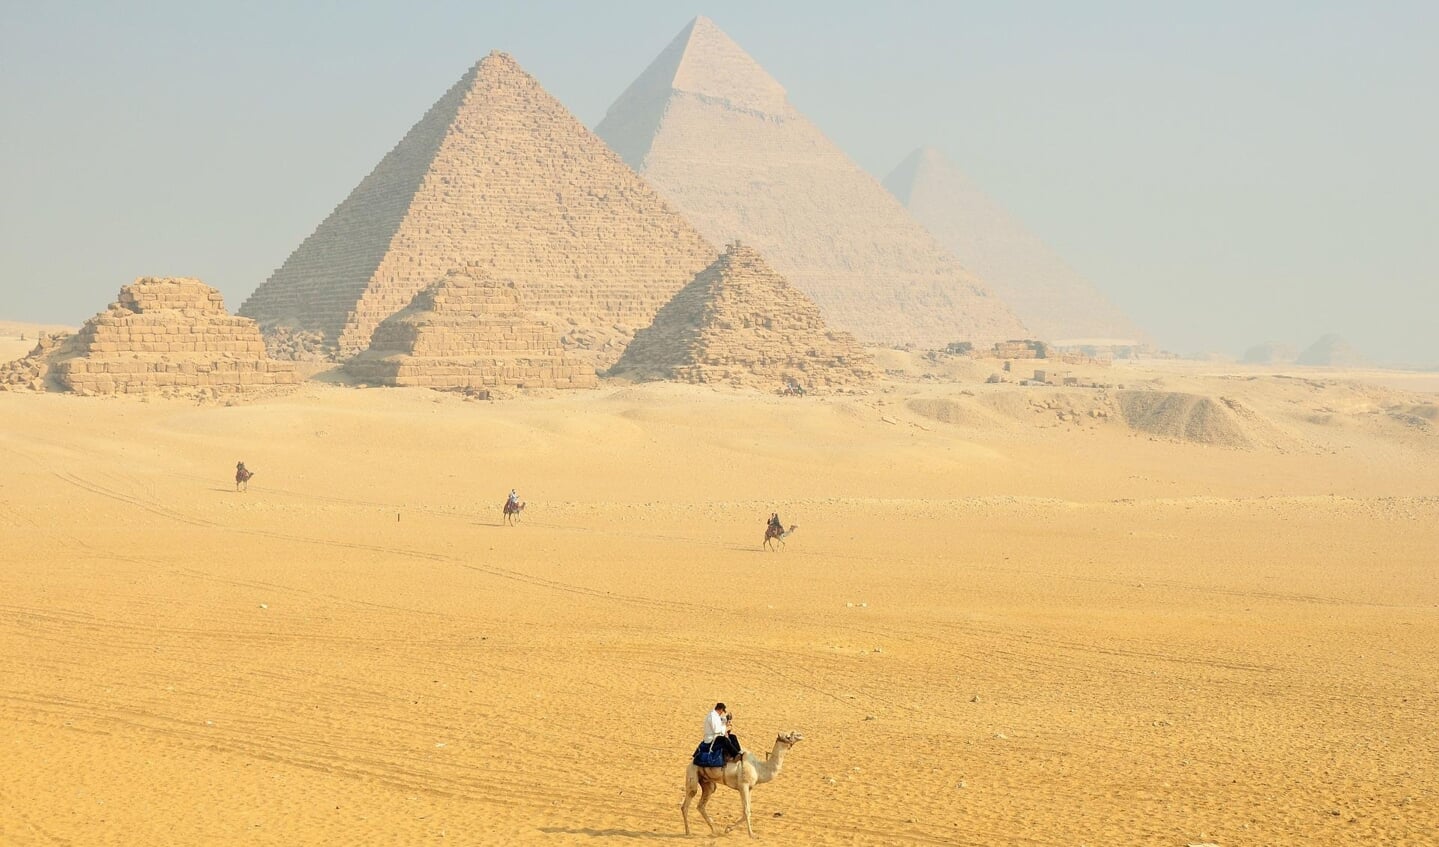 De adembenemende piramides van Gizeh, vlakbij de hoofdstad Cairo